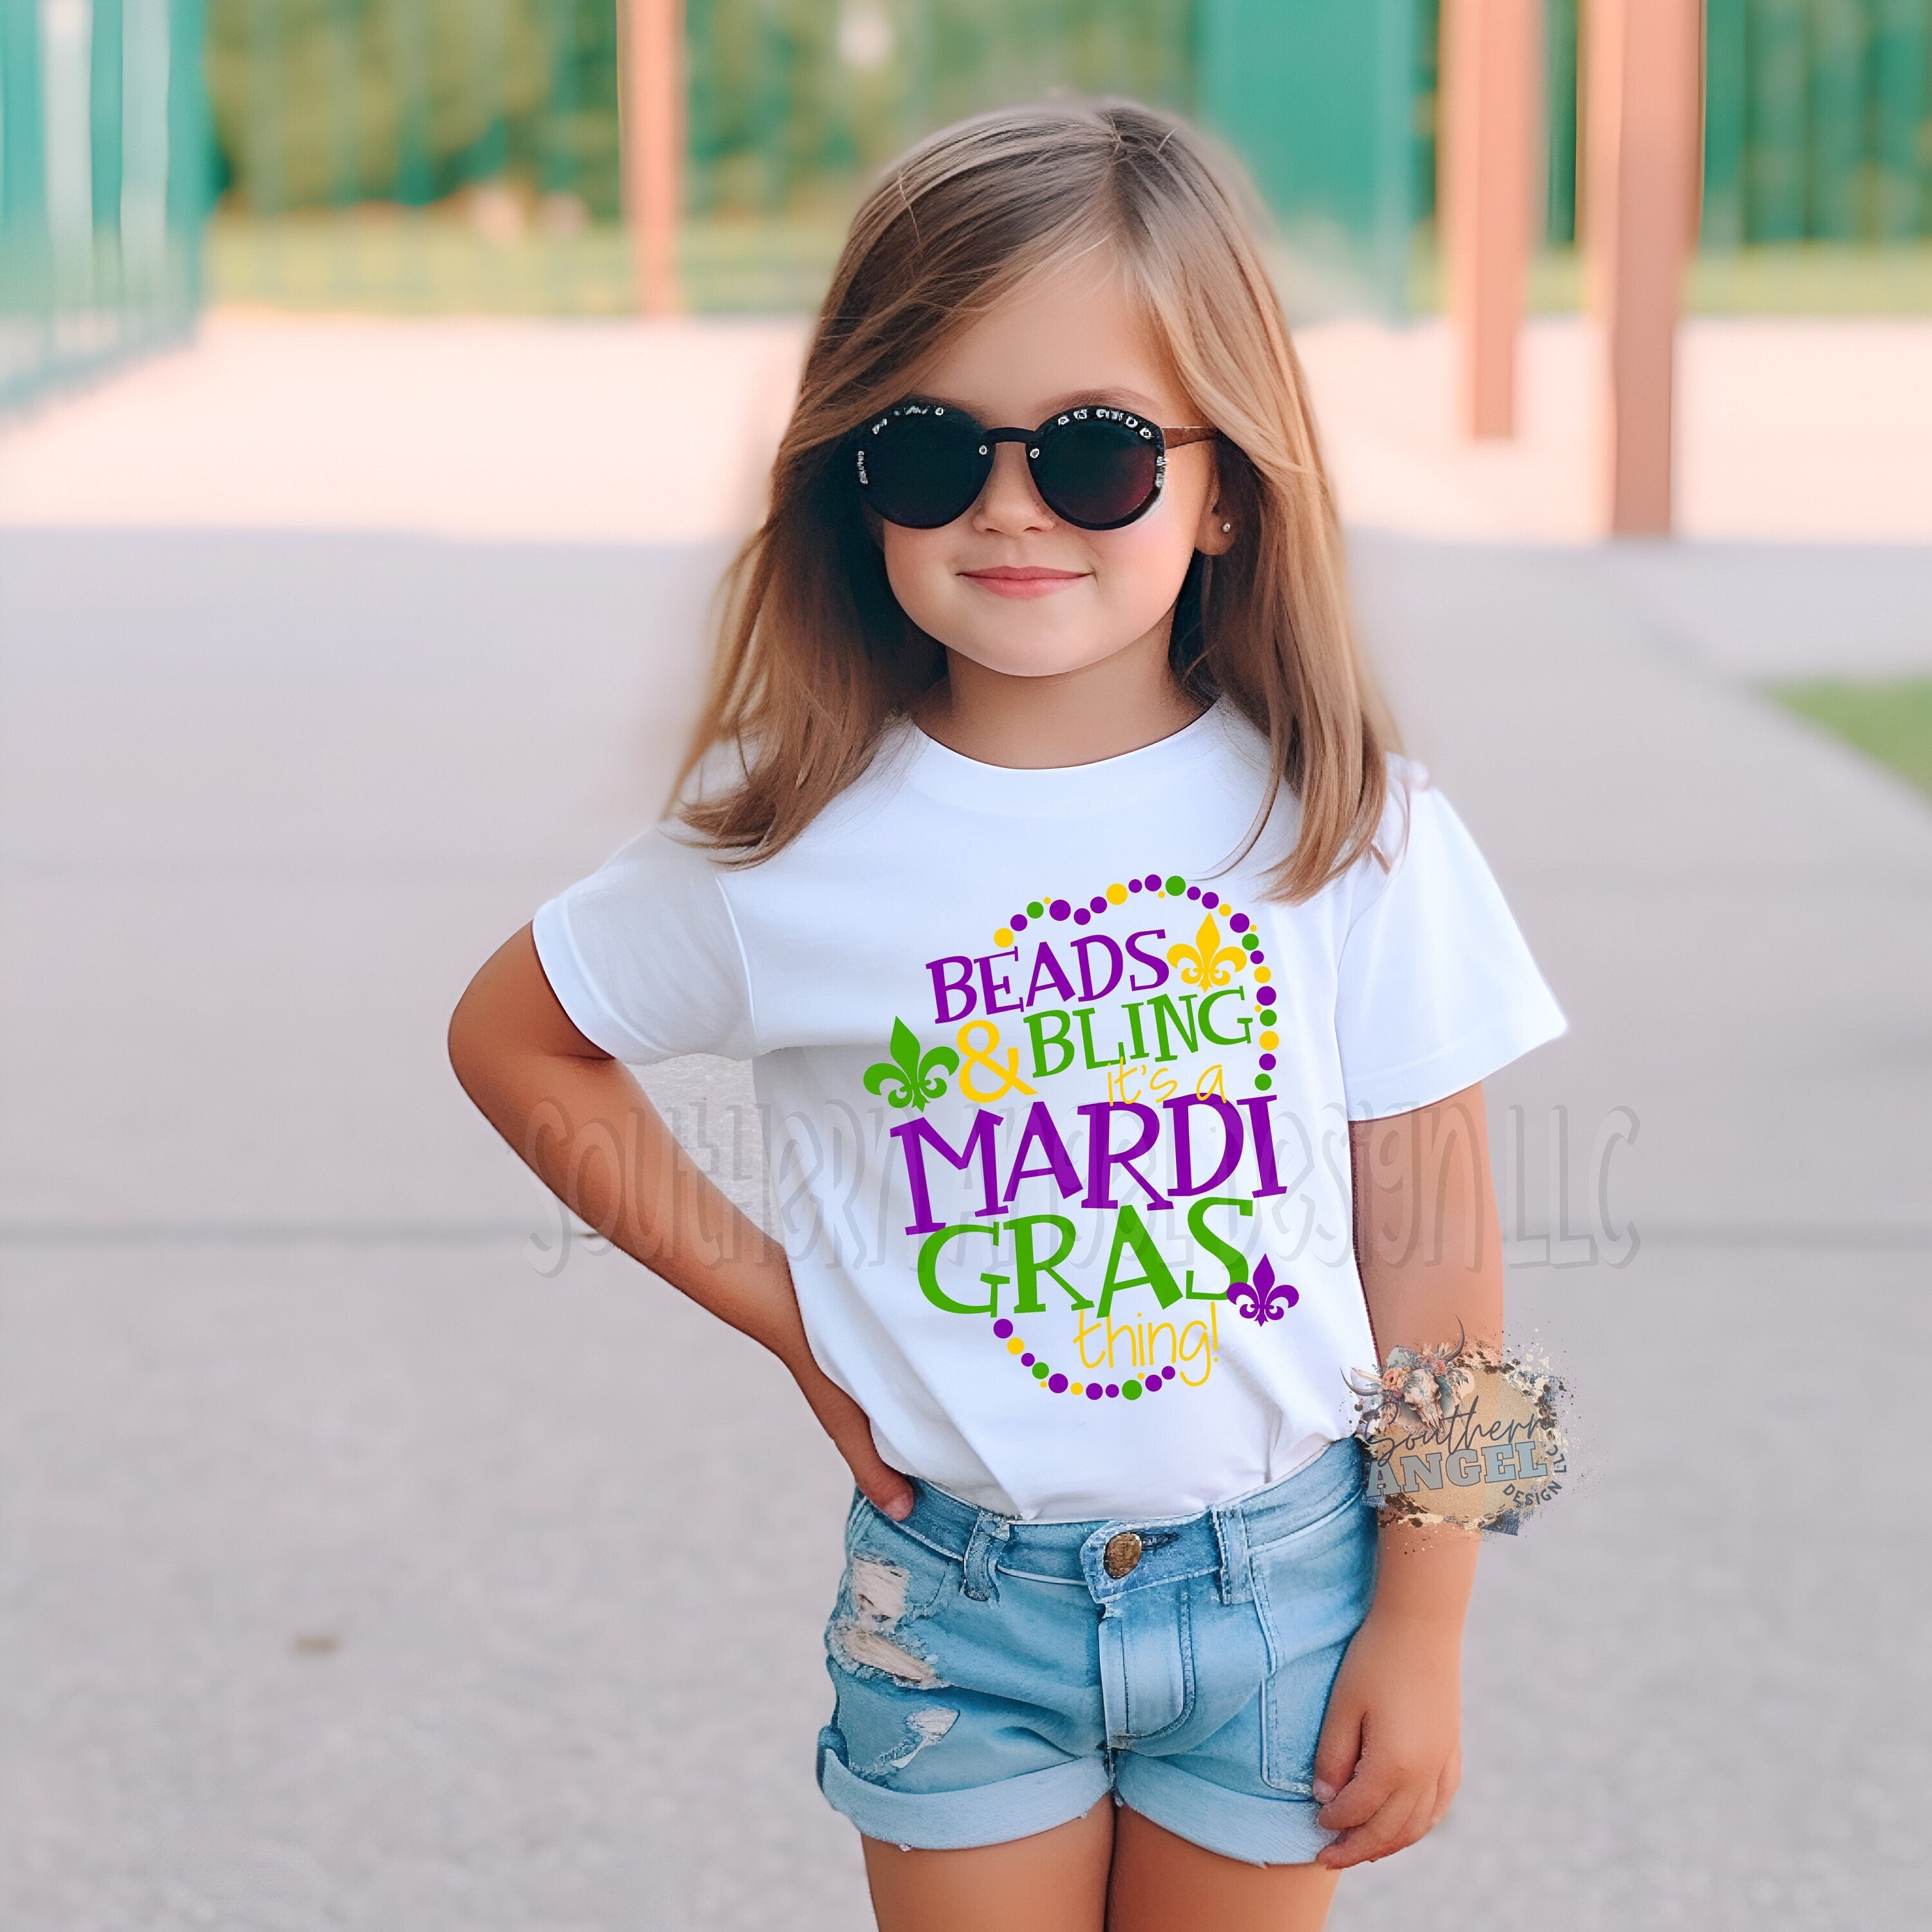 Kids Mardi Gras shirt, Beads and bling it’s a Mardi Gras thing shirt, Girl’s Mardi Gras, Toddler Mardi Gras shirt, Nola shirt